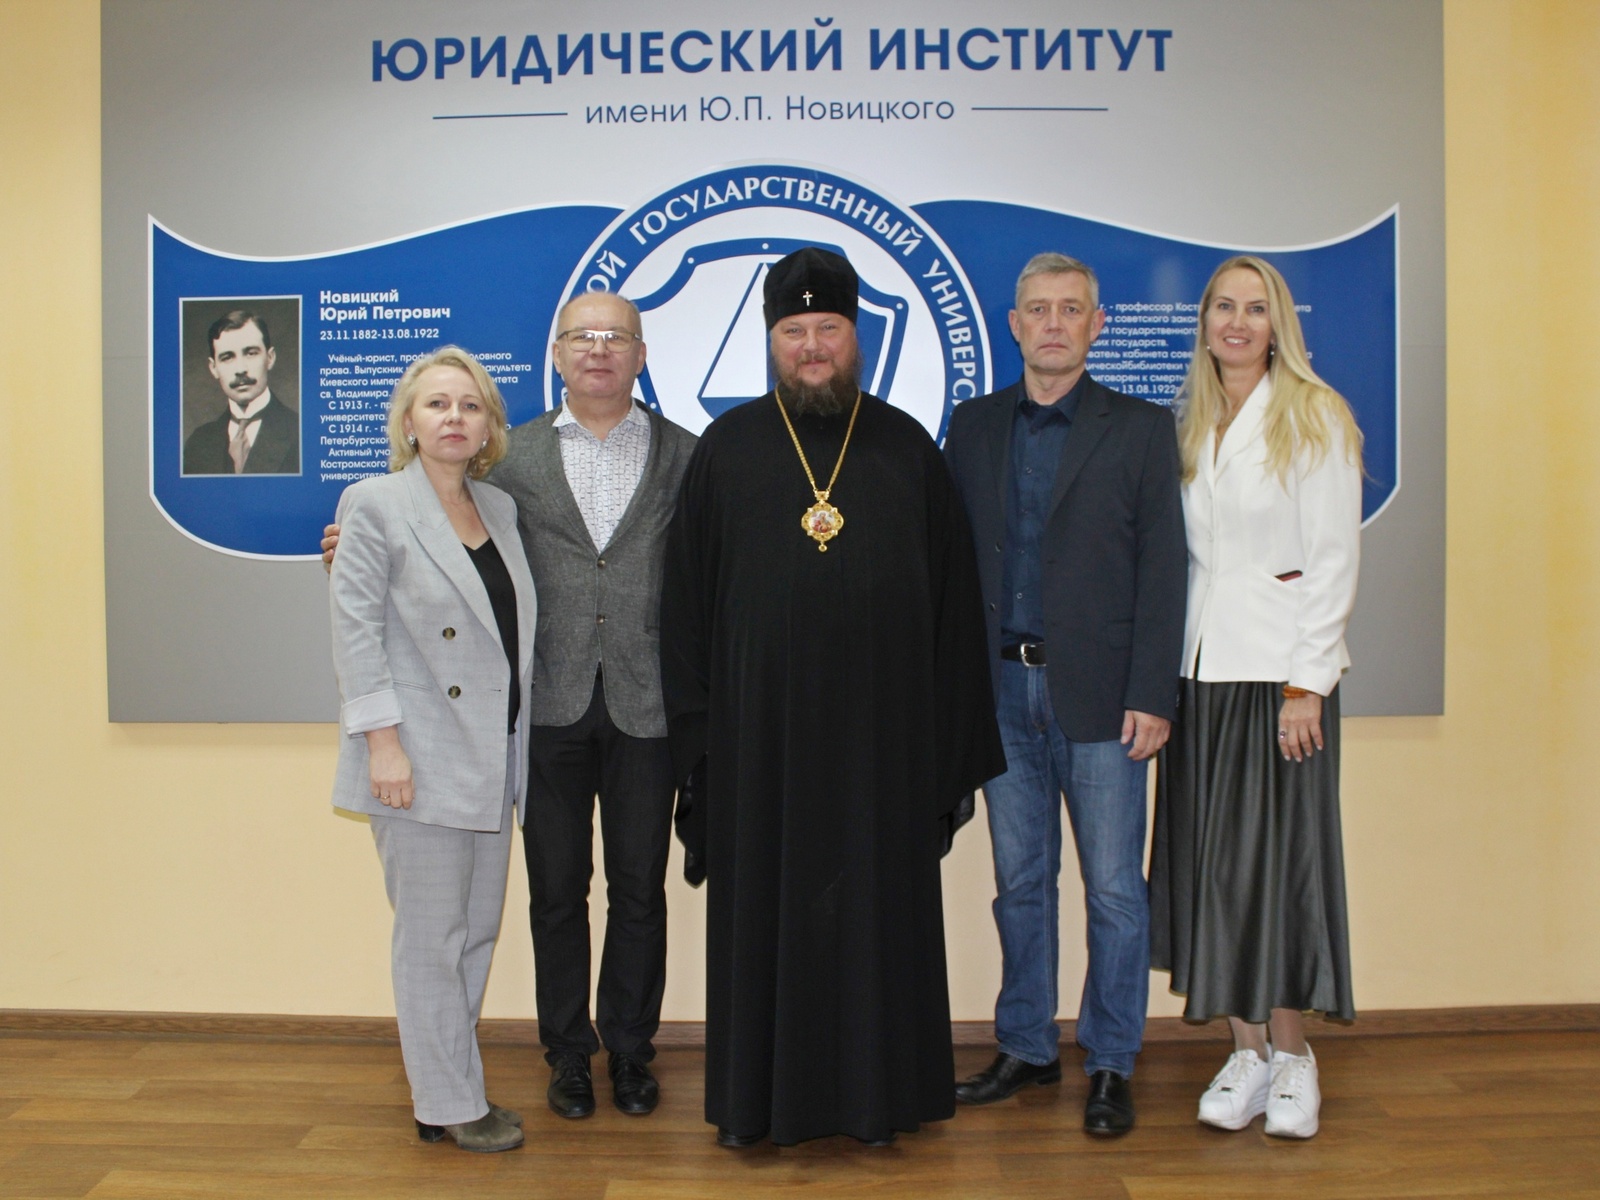 конференция «Историческая память и духовный опыт формирования российской государственности»